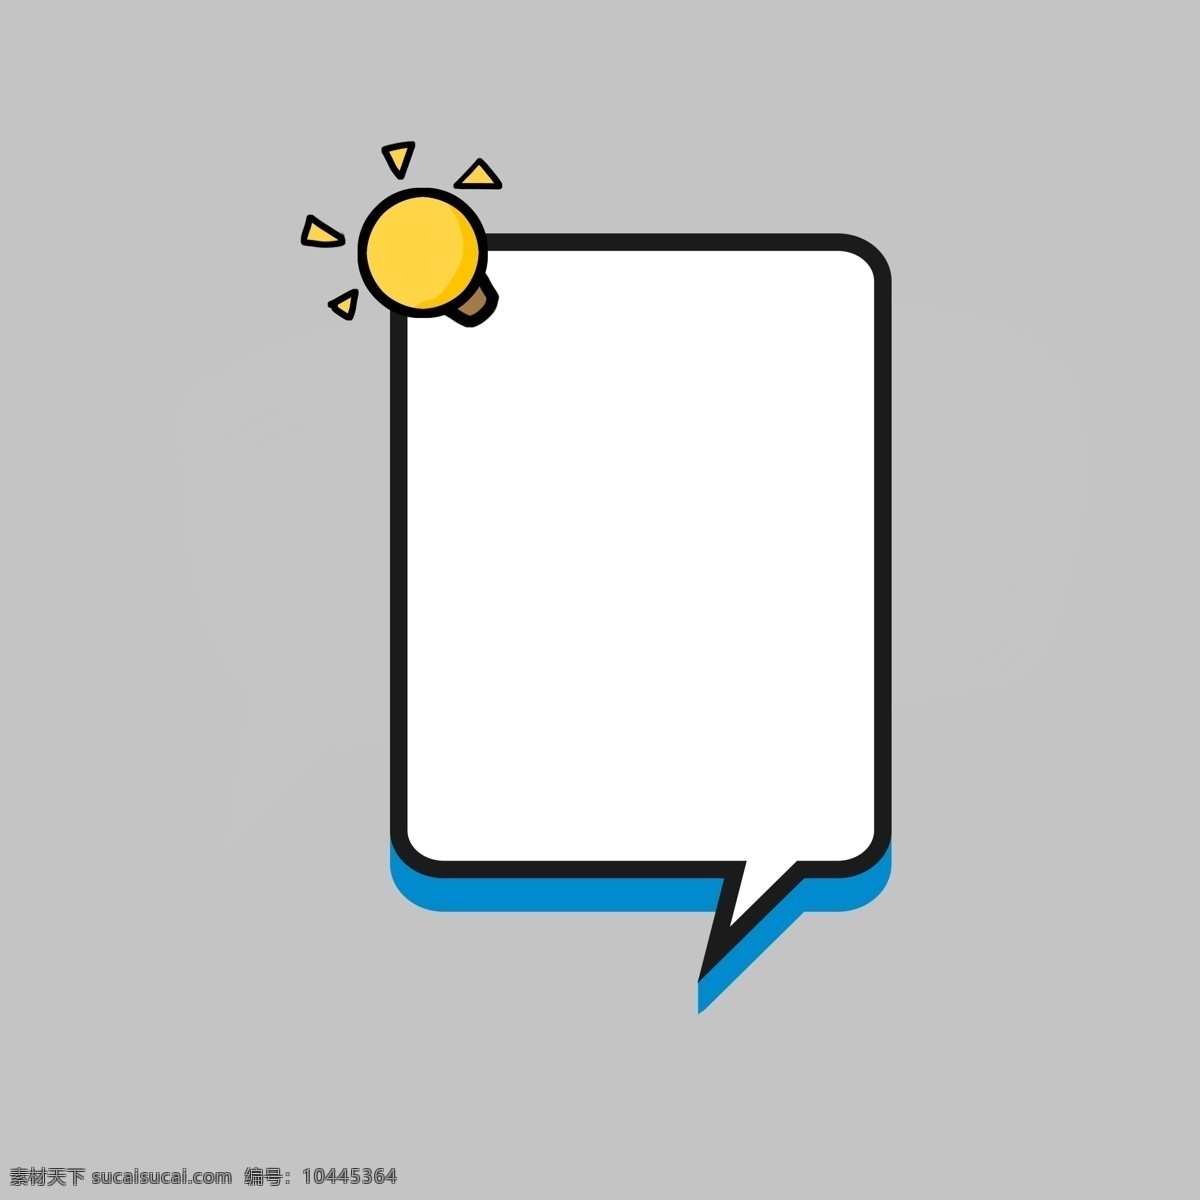 卡通 灯泡 方形 对话框 蓝色手绘 卡通对话框 气泡对话框 气泡对话 对话 手绘对话框 可爱对话框 手绘卡通